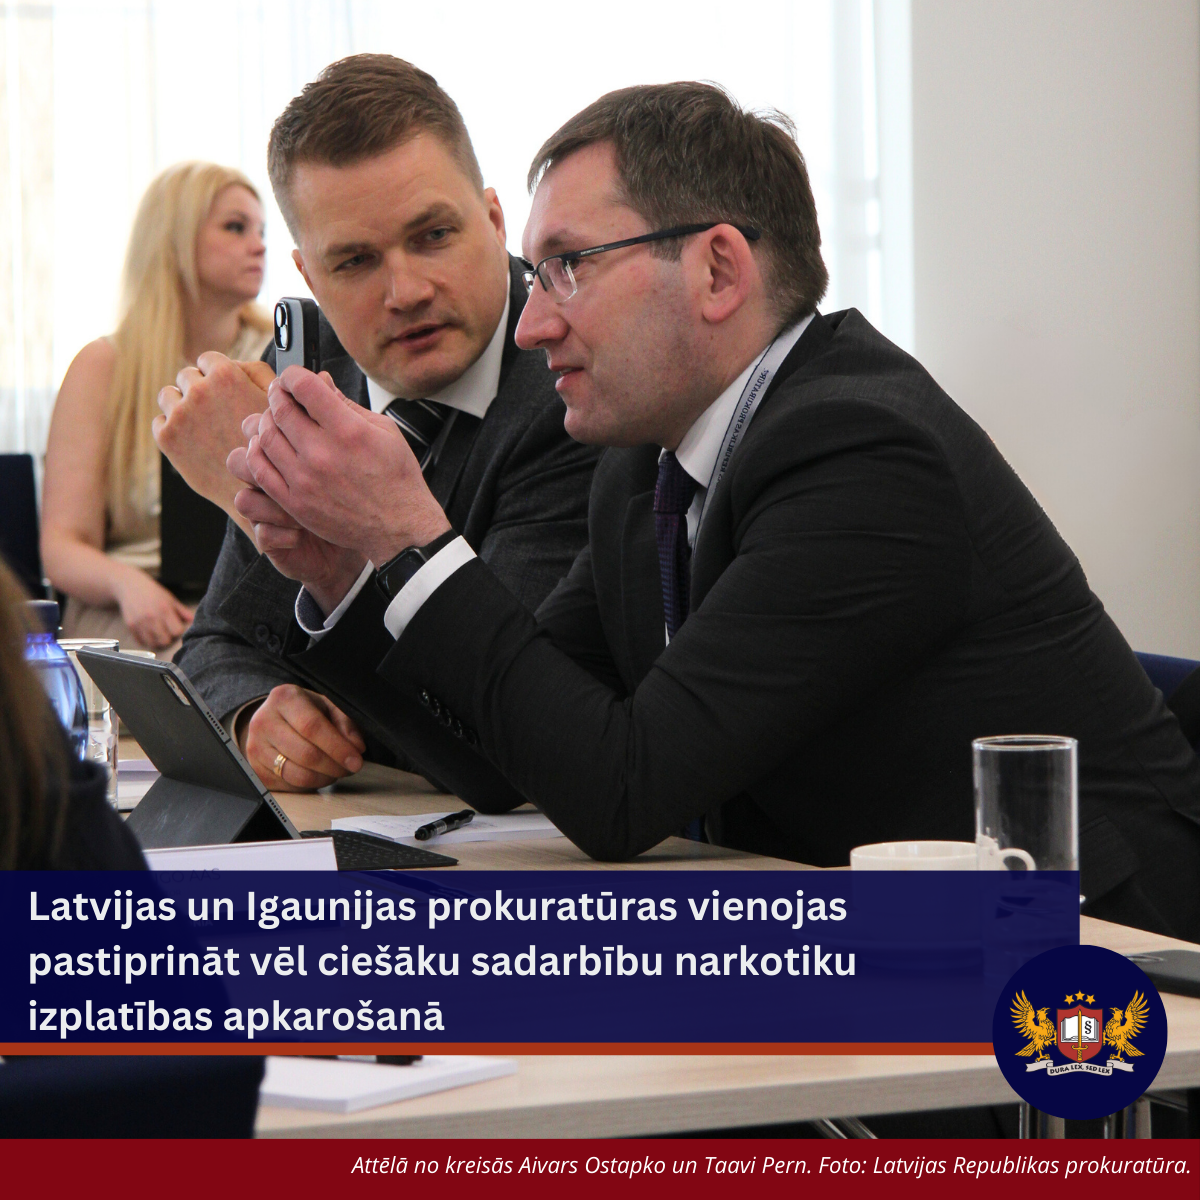 Attēls: Latvijas un Igaunijas prokuratūras vienojas pastiprināt vēl ciešāku sadarbību narkotiku izplatības apkarošanā 